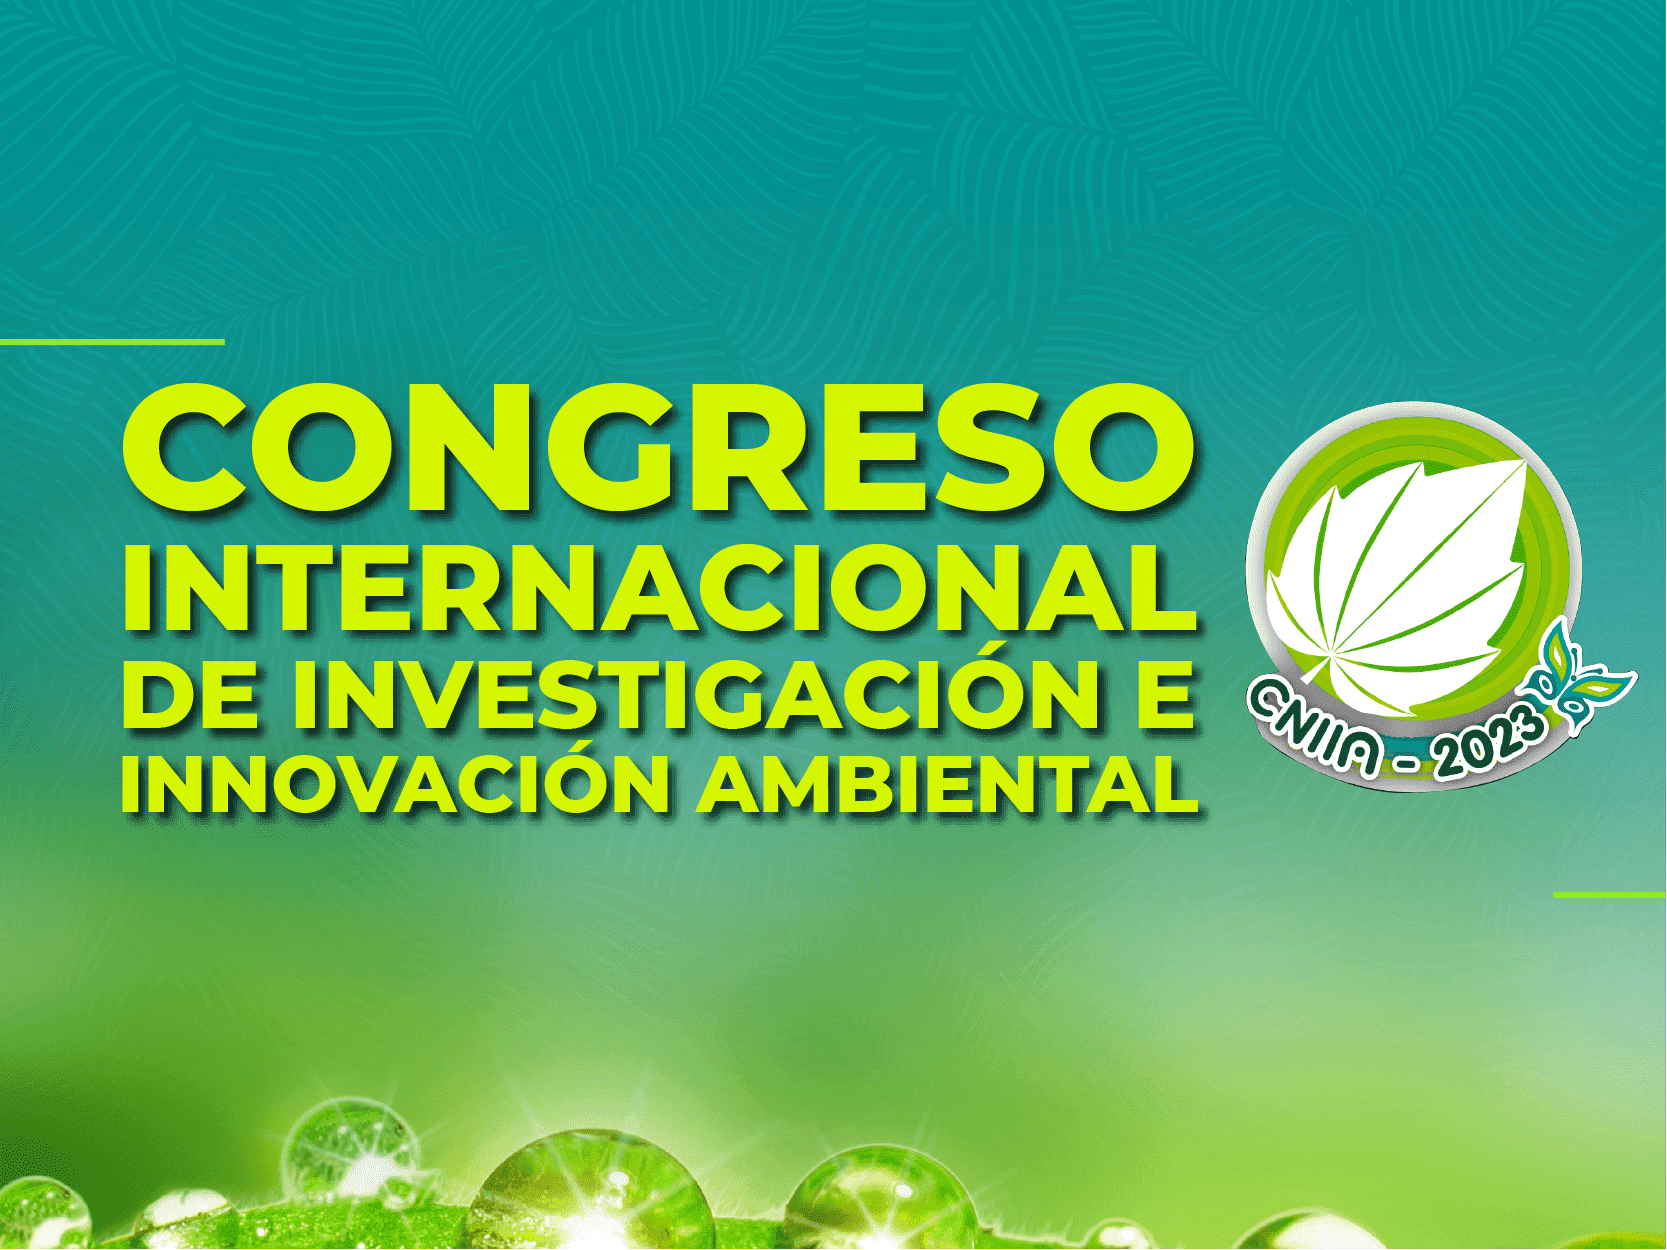 Congreso internacional de investigación e innovación ambiental